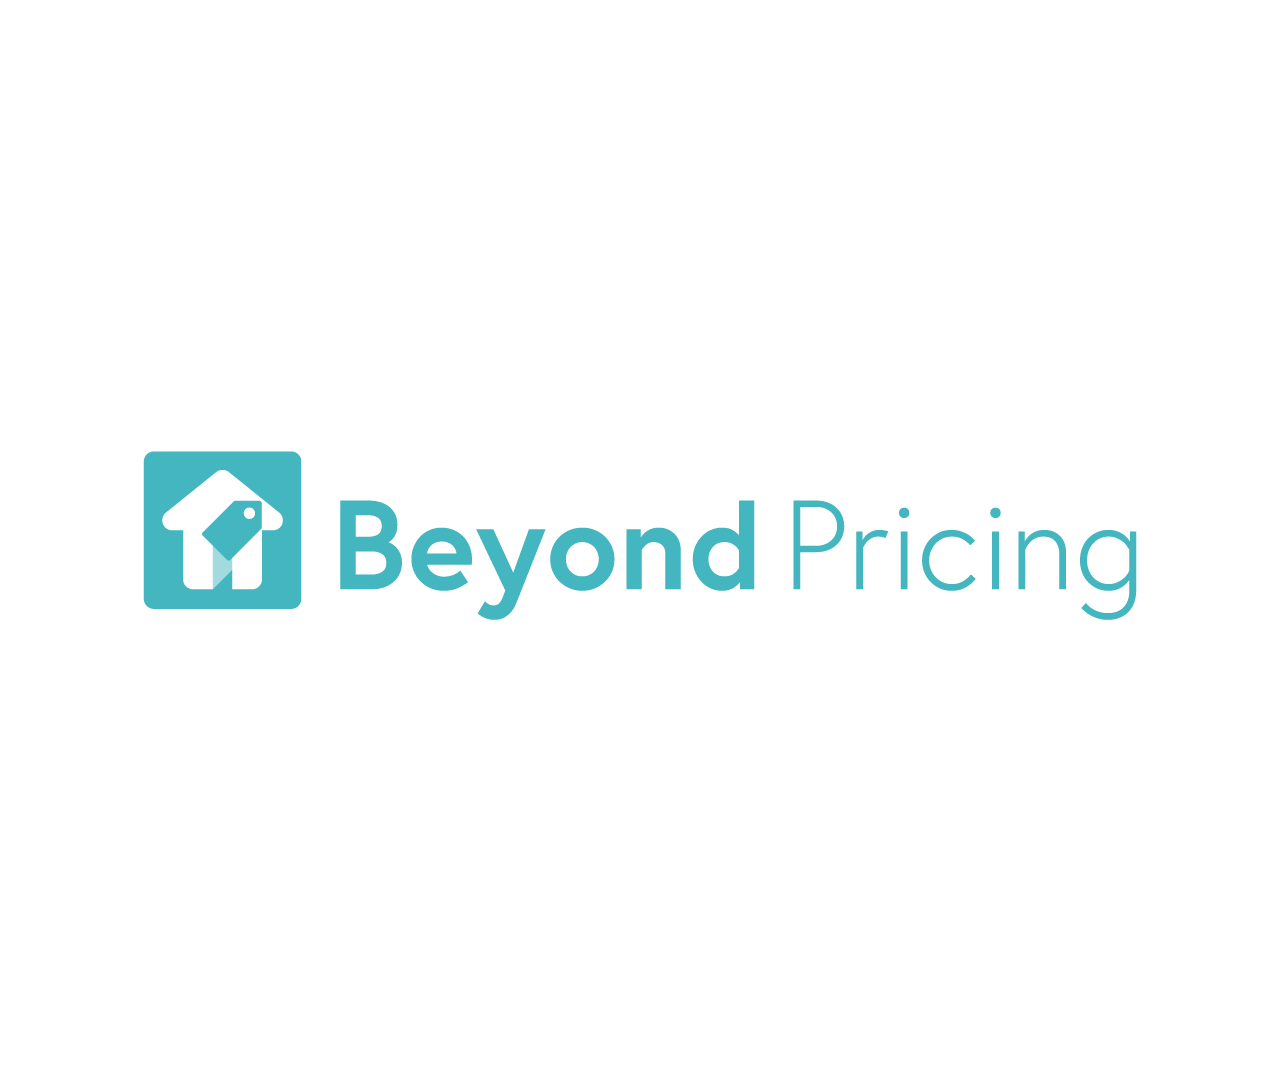 Beyond Pricing